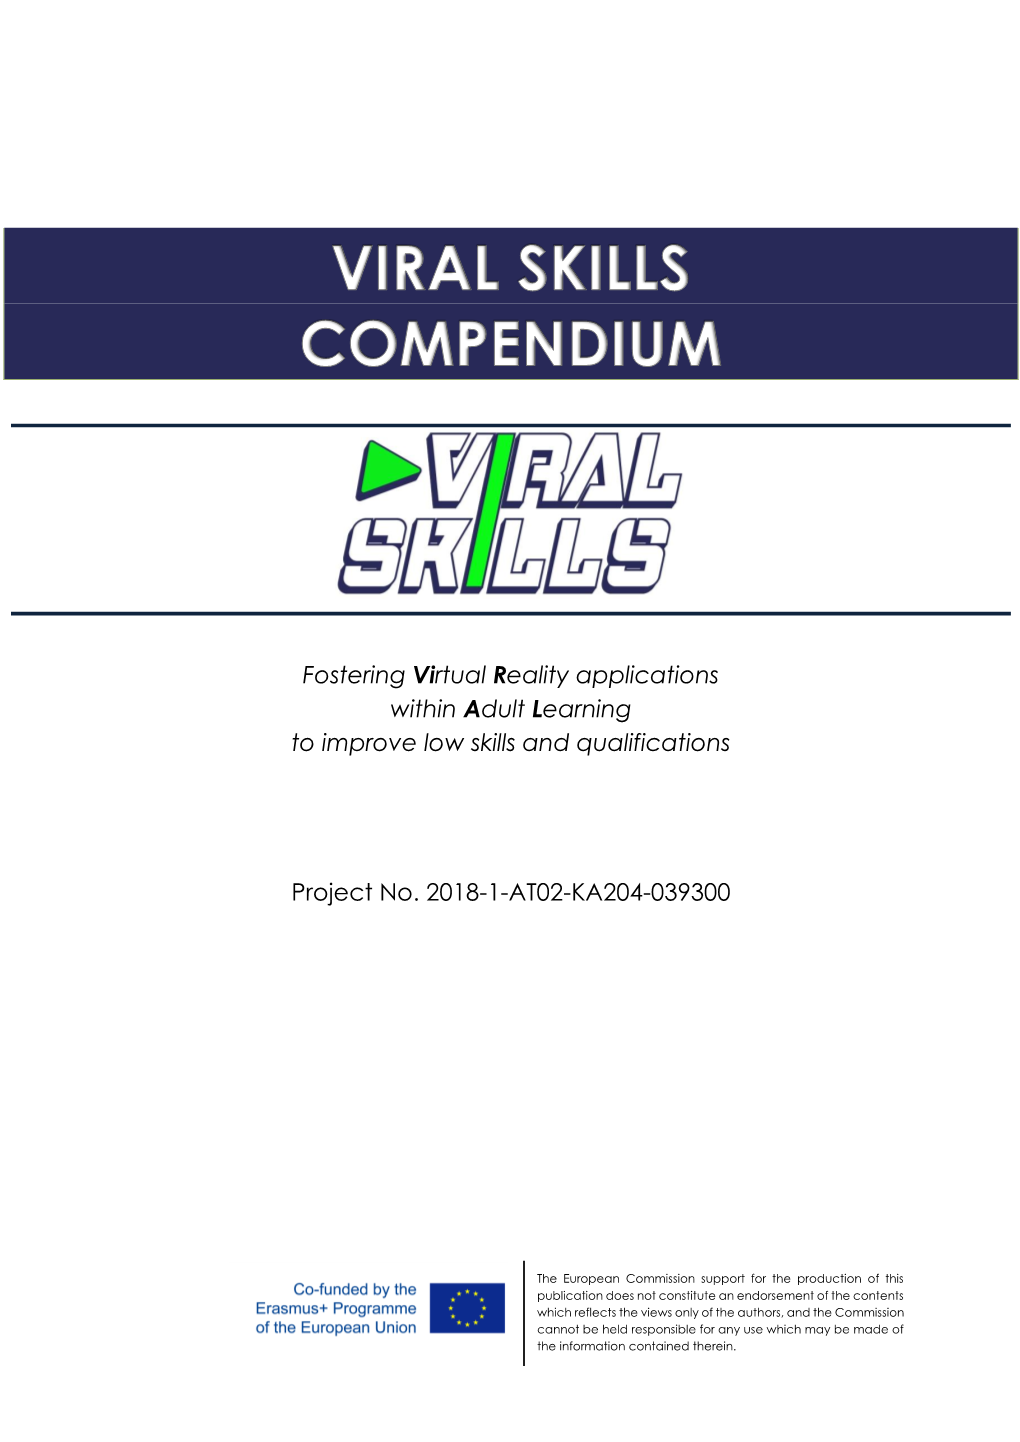 Viral SKILLS 2018-1-AT02-KA204-039300 COMPENDIUM